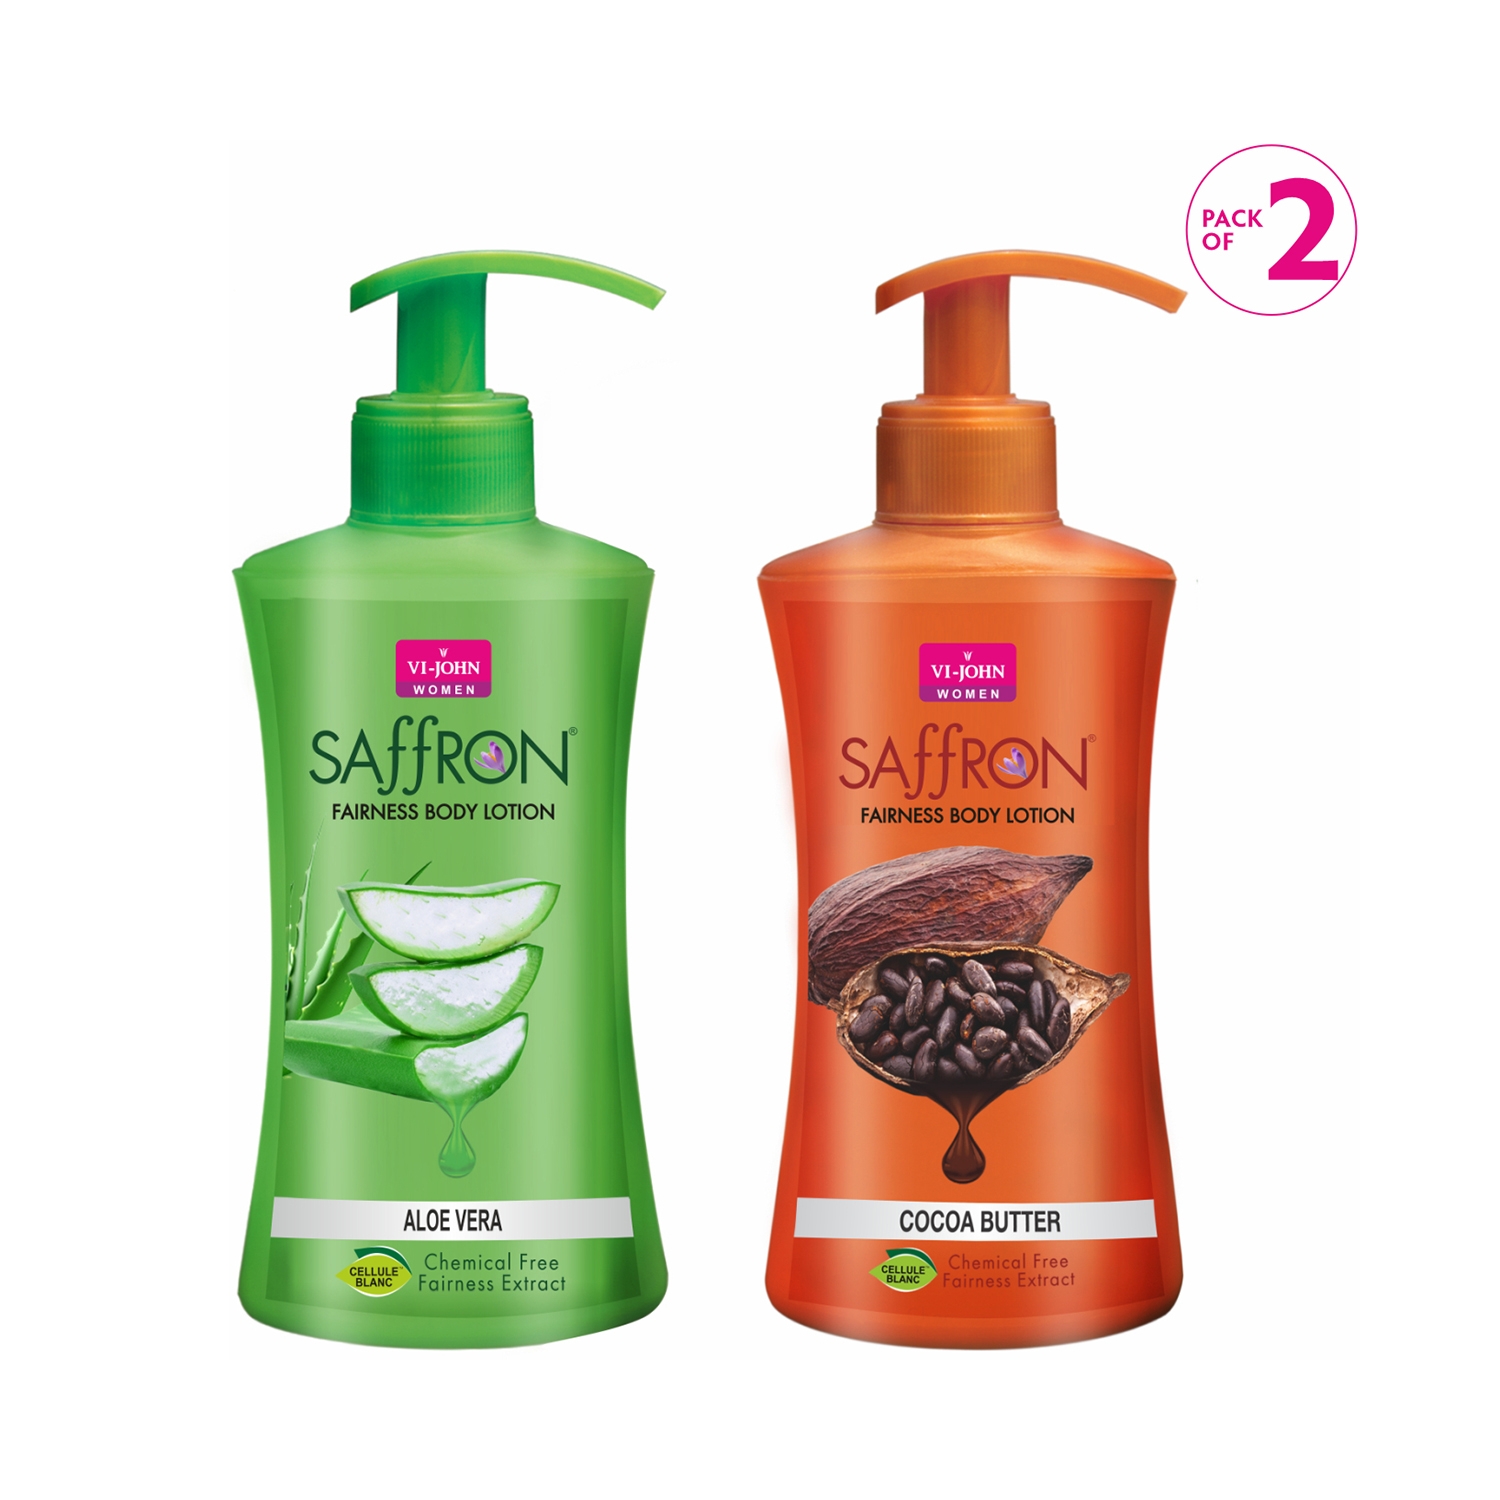 VI-JOHN | VI-JOHN Fairness Saffron Body Lotion - Aloe Vera and Cocoa Butter